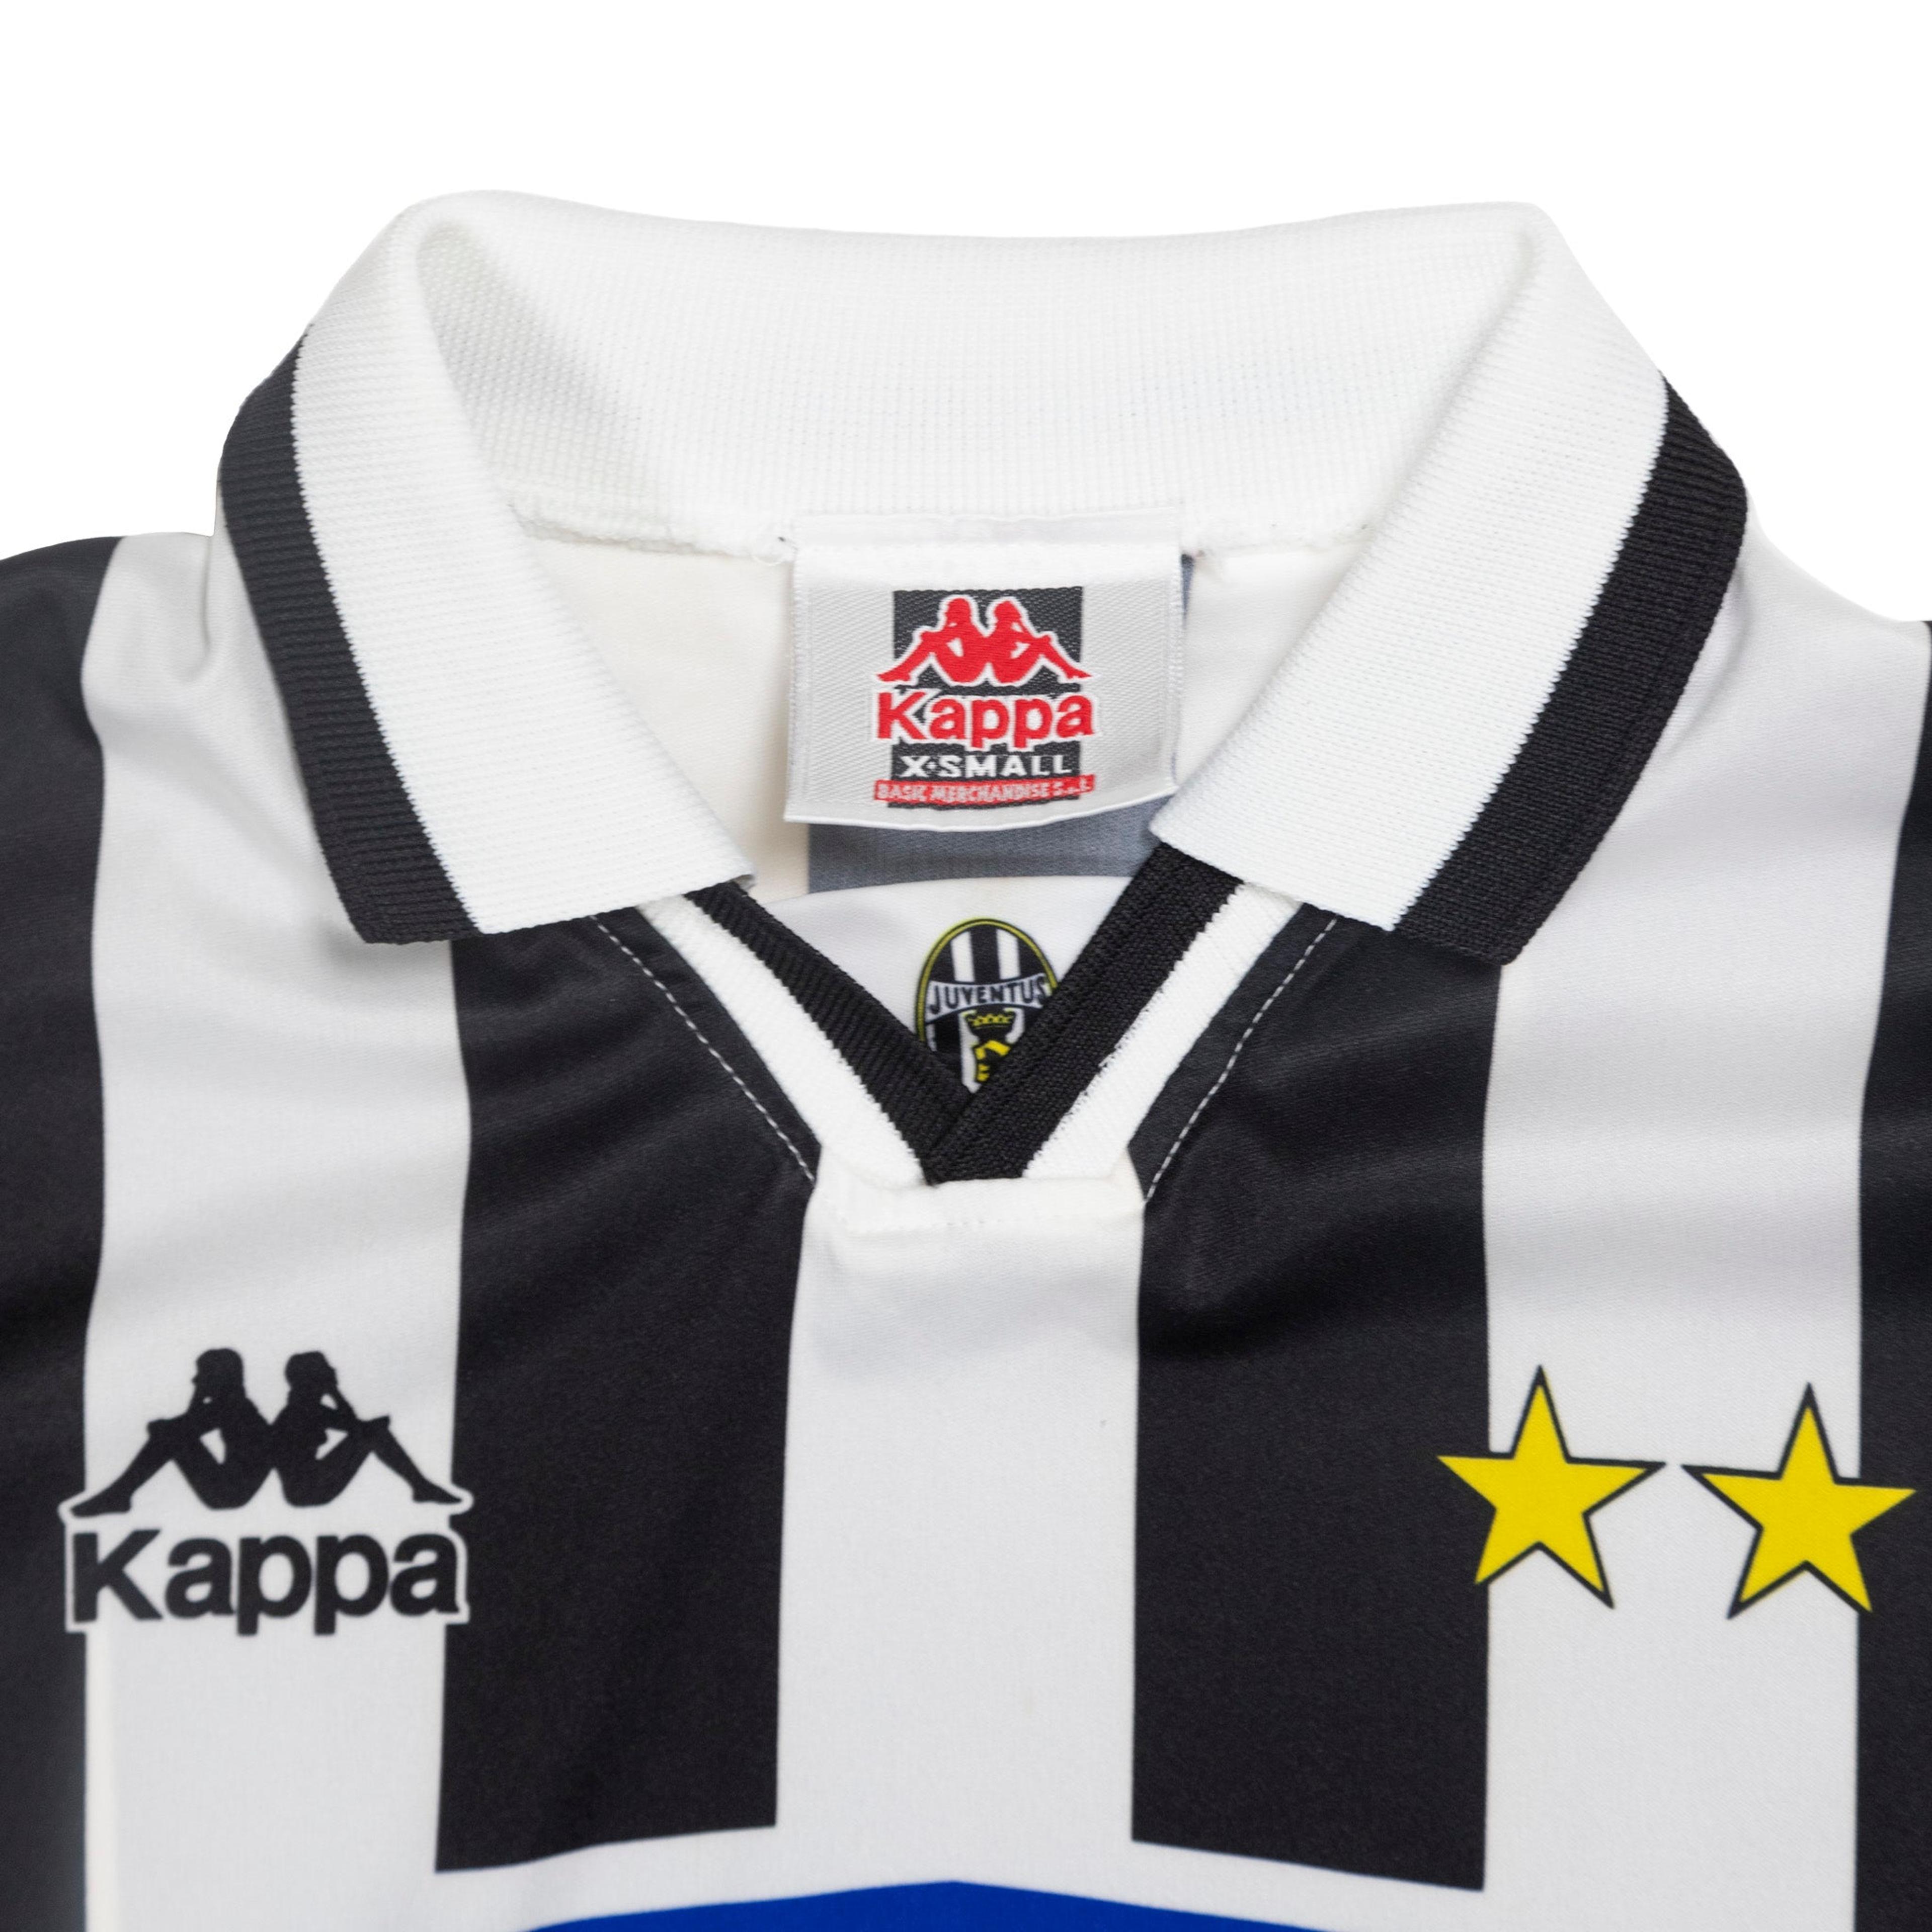 Alternate View 2 of 1994/95 Juventus FC Kappa Home Kit